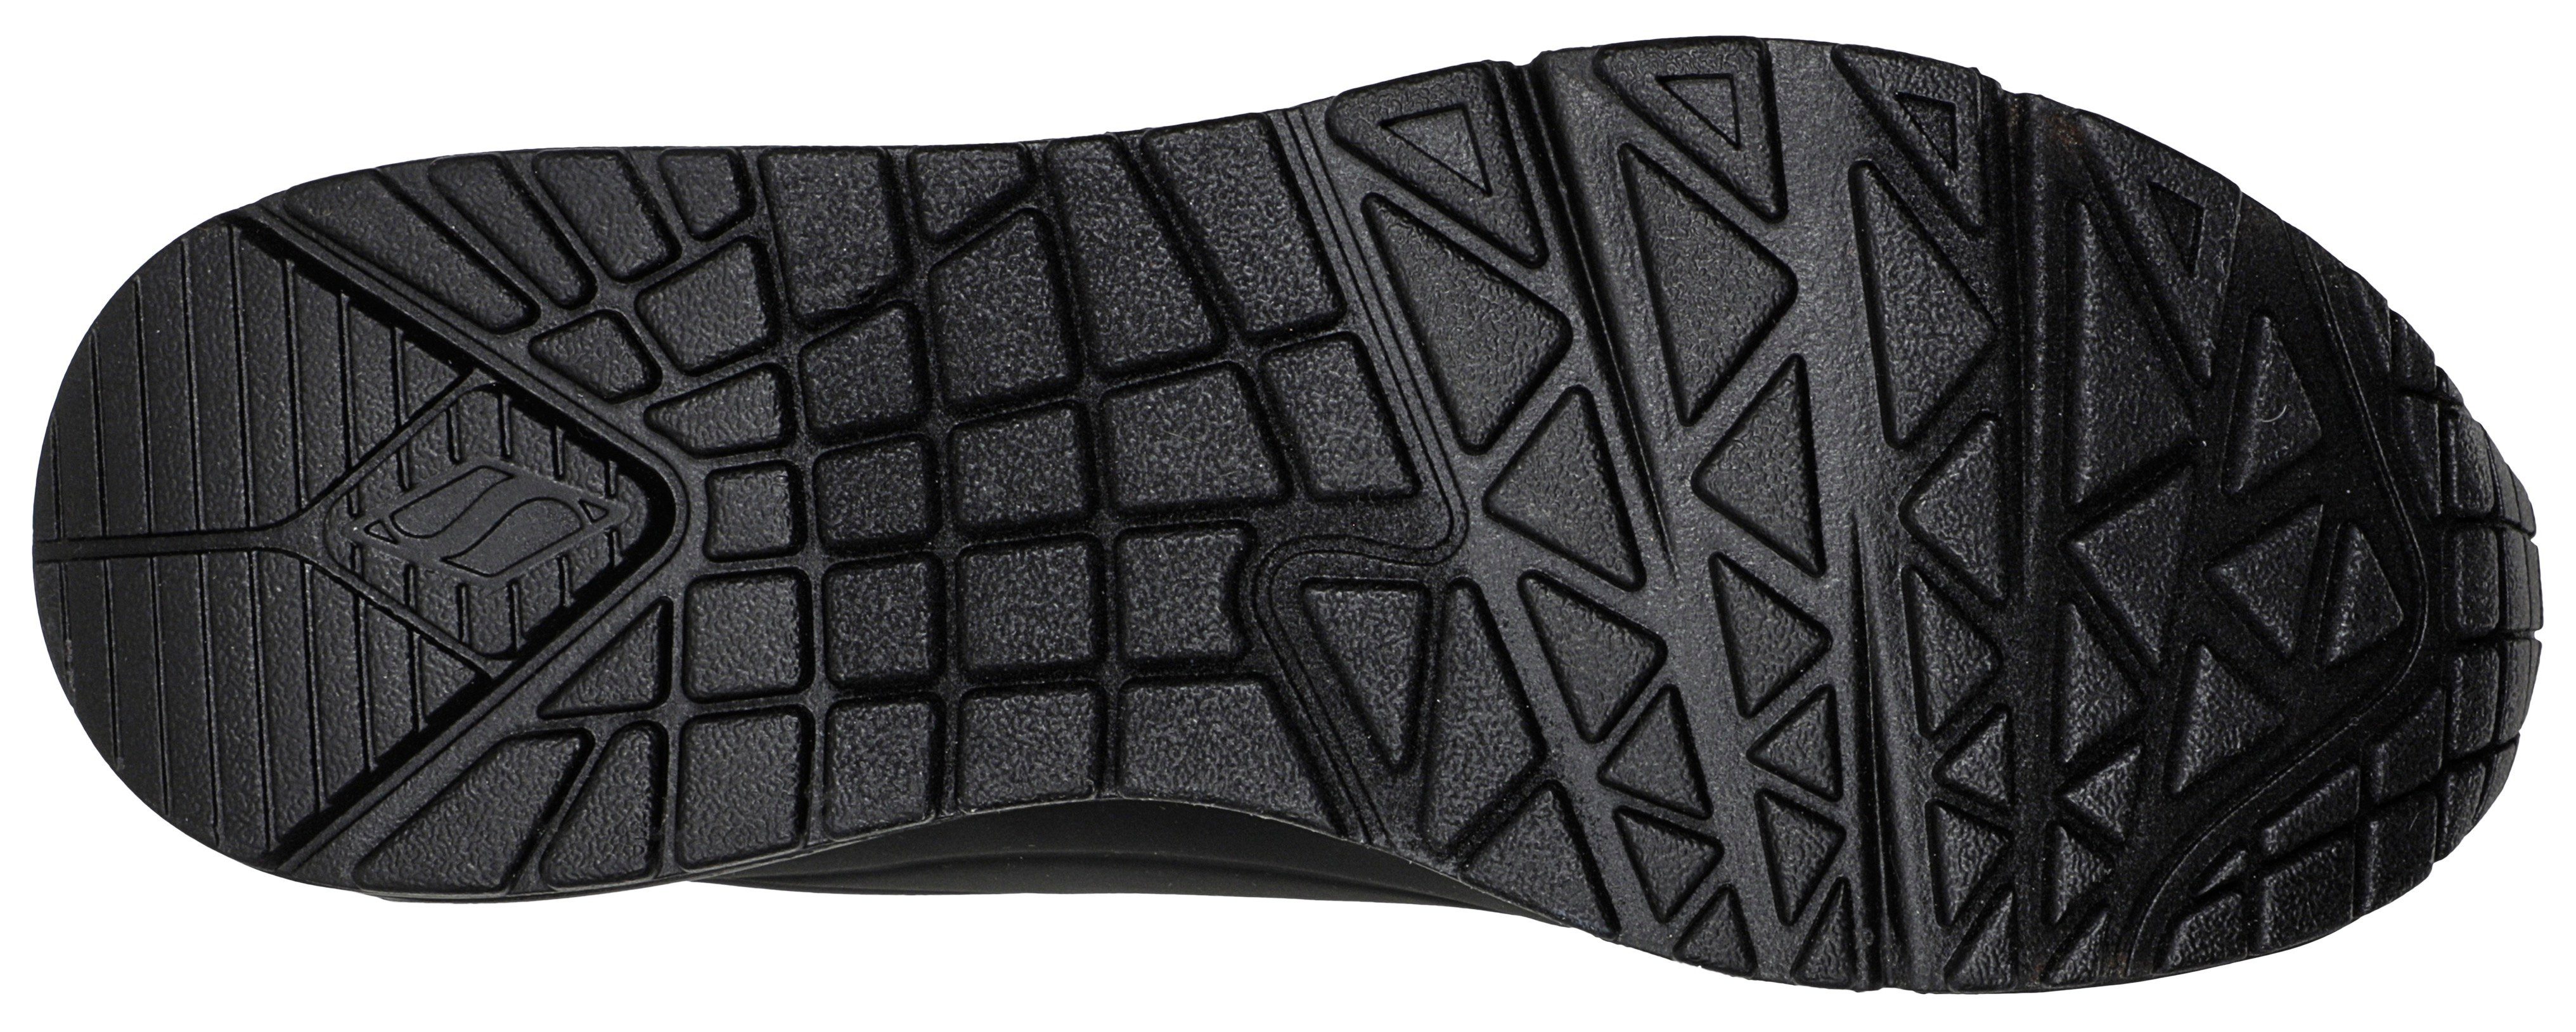 Skechers mit UNO schwarz Sneaker Metallic-Einsatz